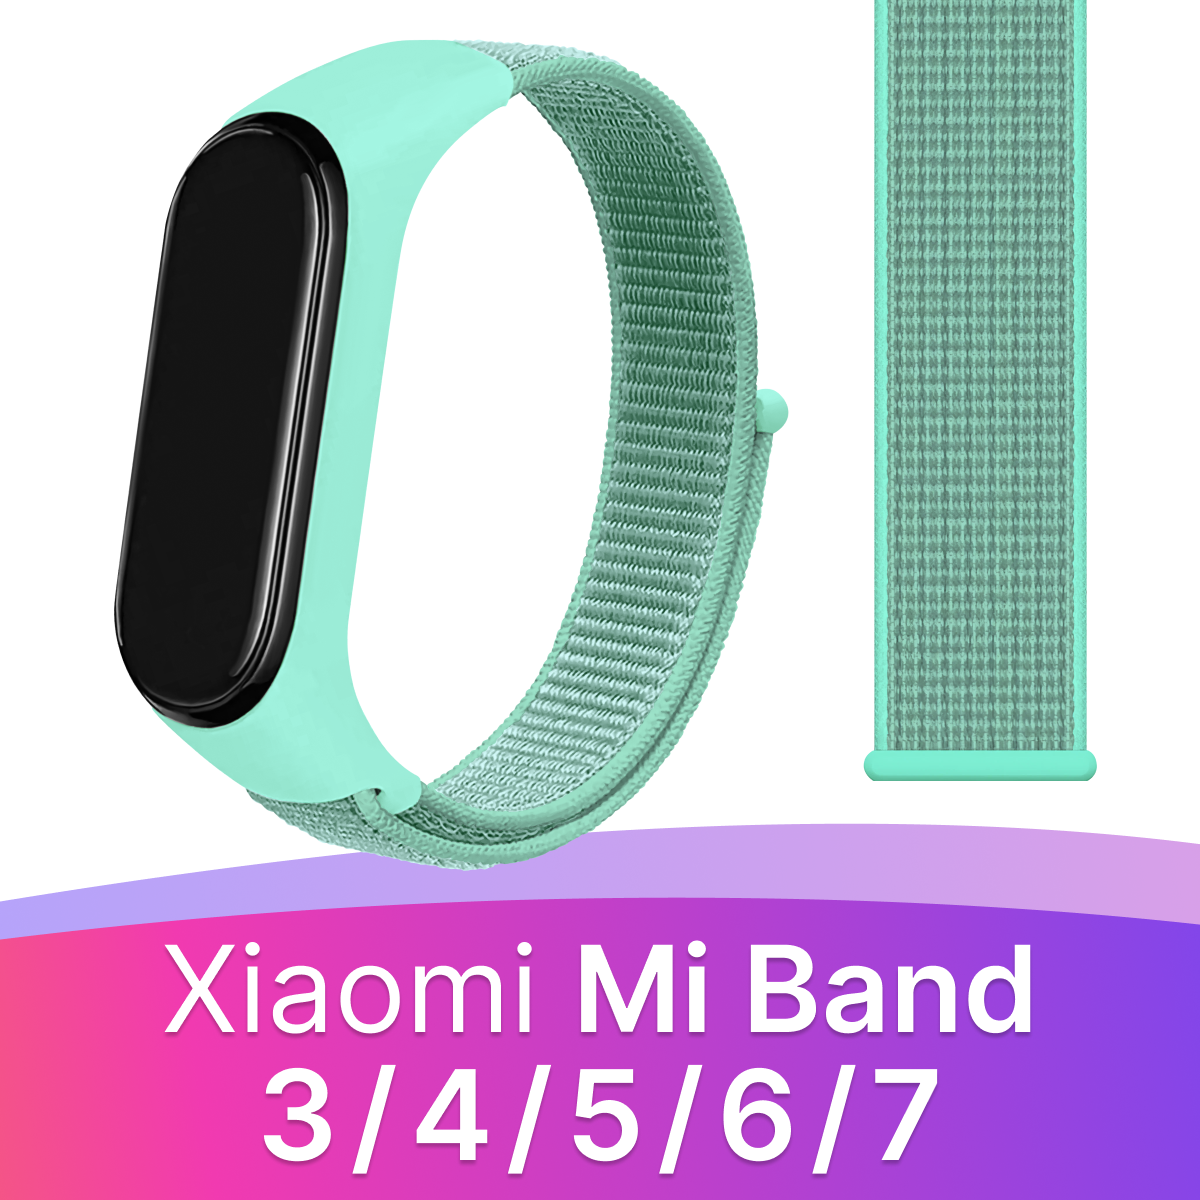 Нейлоновый ремешок для Xiaomi Mi Band 3, 4, 5, 6, 7 / Тканевый браслет / Бирюзовый